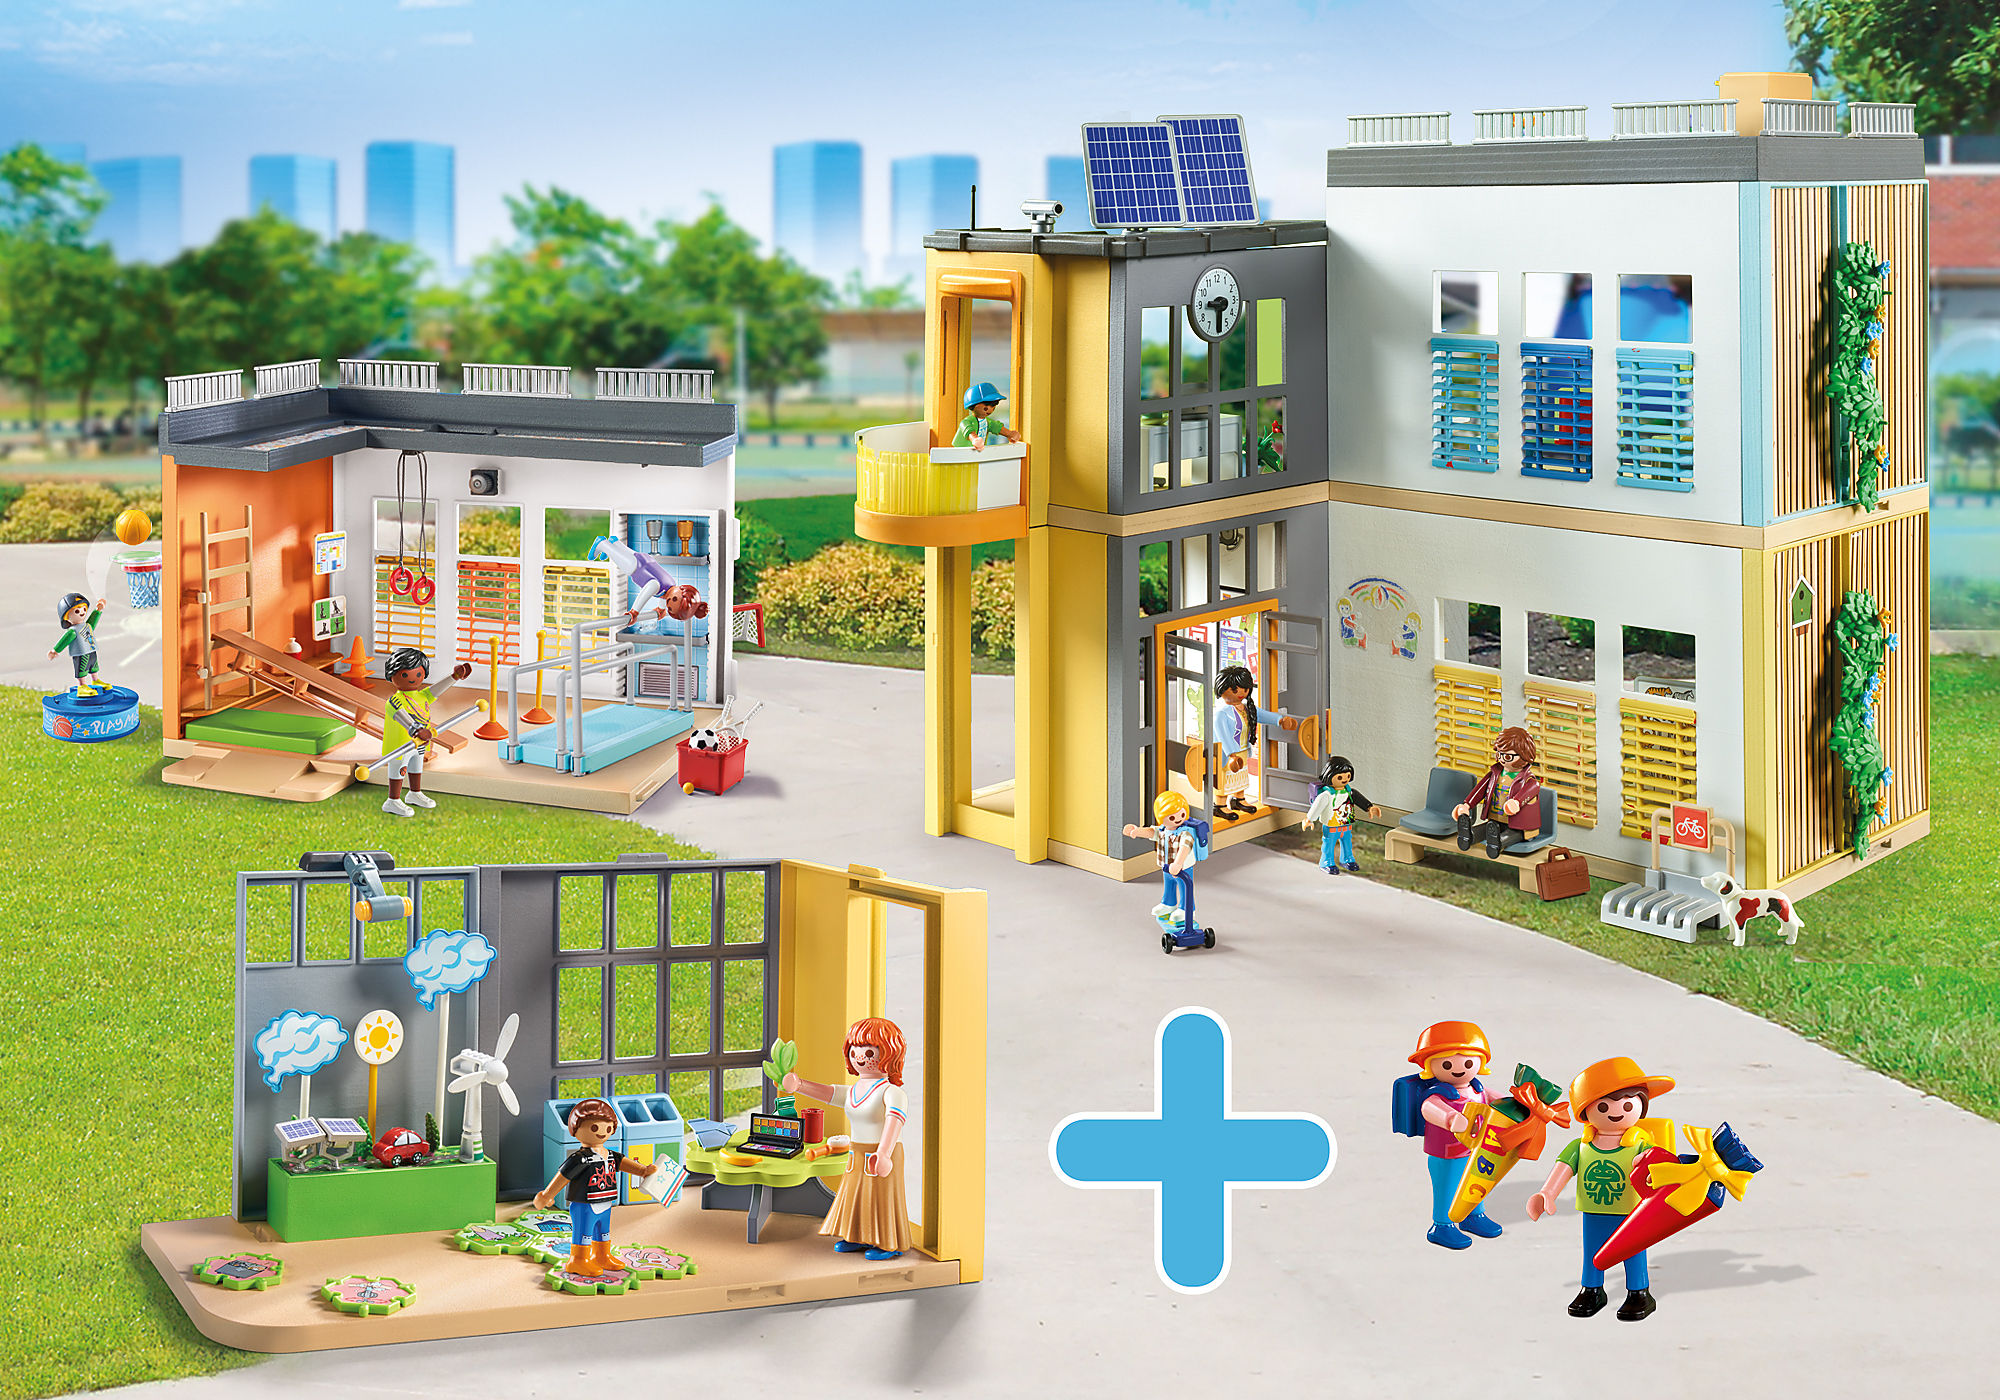 Playmobil 71327 Ecole aménagée - City Life - avec Six Personnages, Une  école sur Deux étages avec Un Ascenseur, Une terrasse sur Le Toit et Un  Chien 